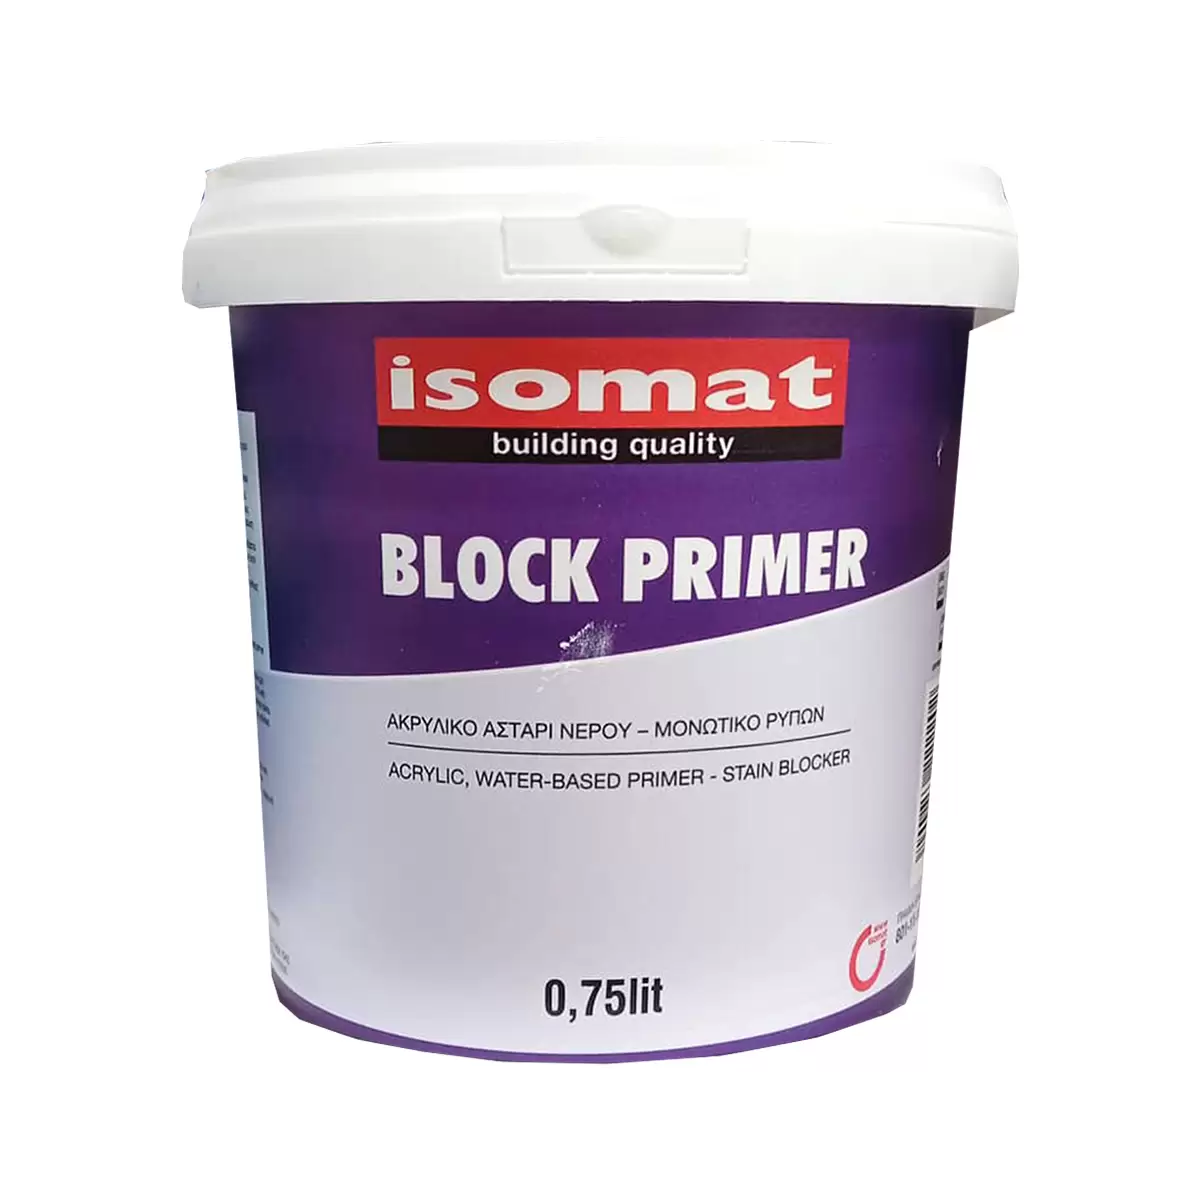 BLOCK PRIMER ISOMAT